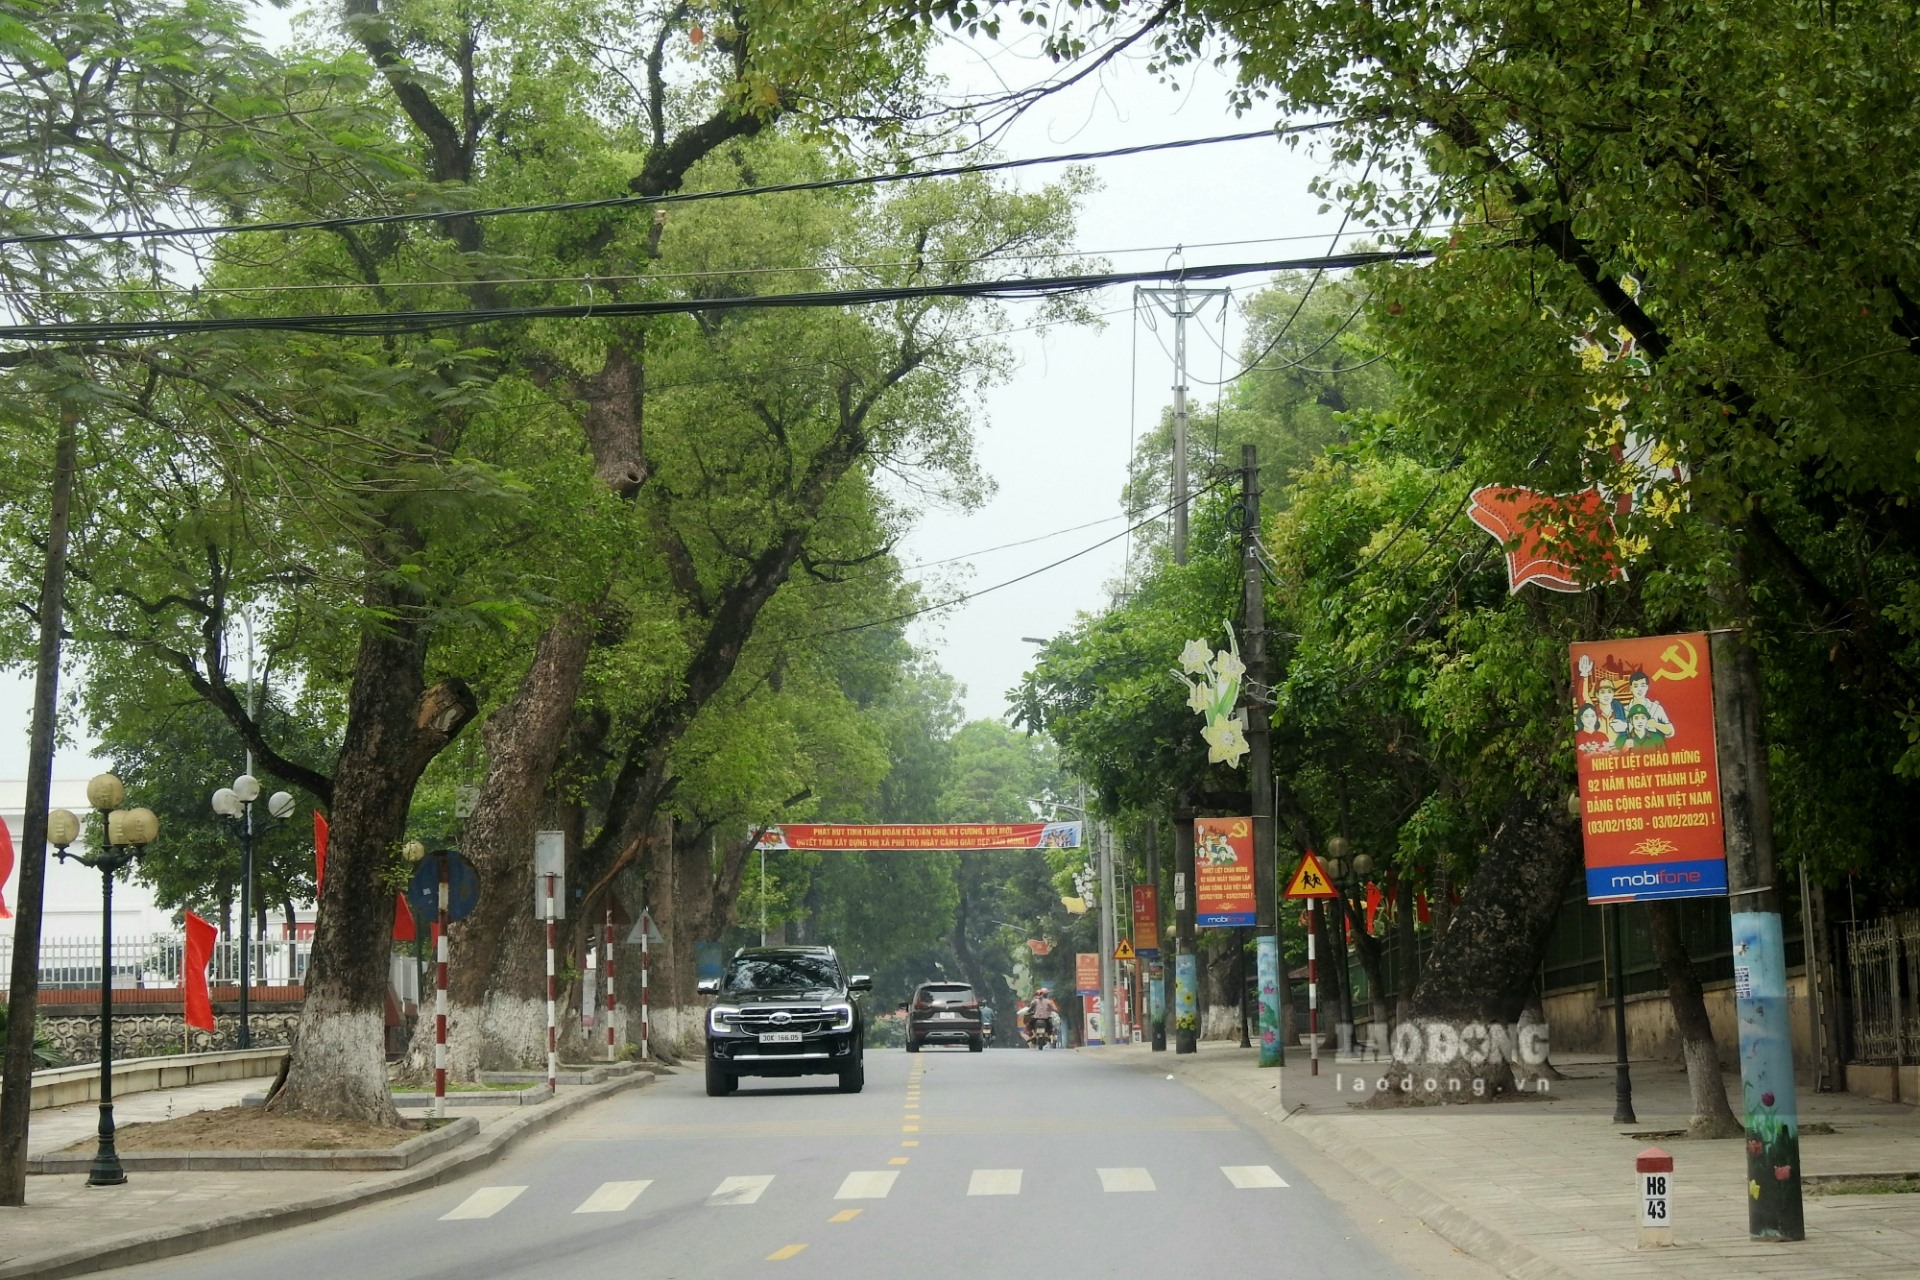 Hòa chung với sự phát triển chung của tỉnh, những năm qua thị xã Phú Thọ đã được đầu tư hệ thống hạ tầng giao thông đồng bộ, mang lại diện mạo mới khang trang, sạch đẹp.